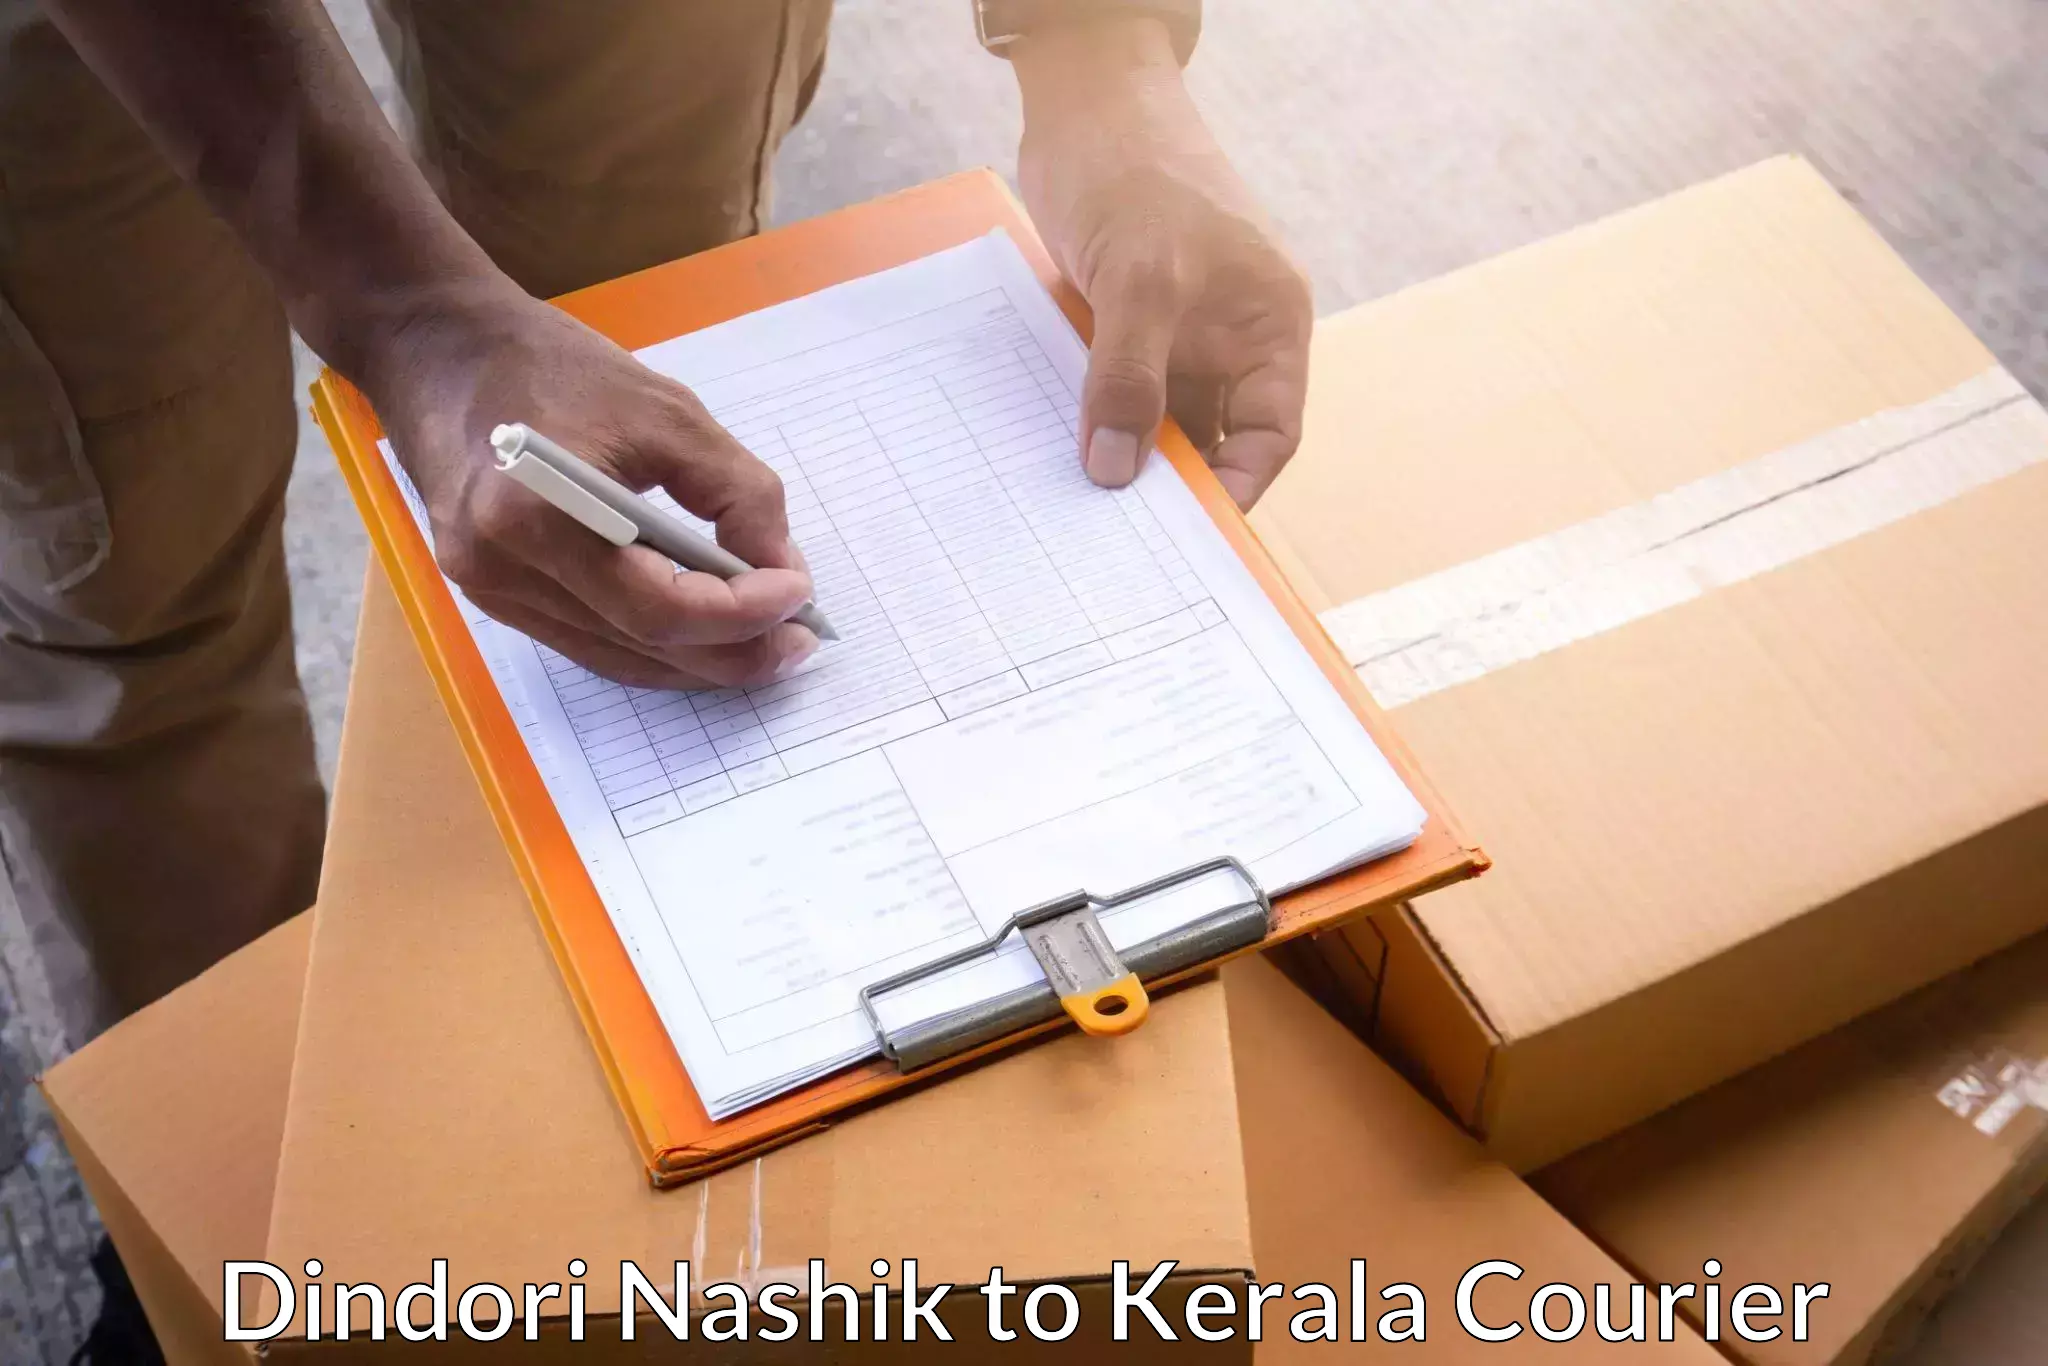 Affordable parcel service Dindori Nashik to Manthuka